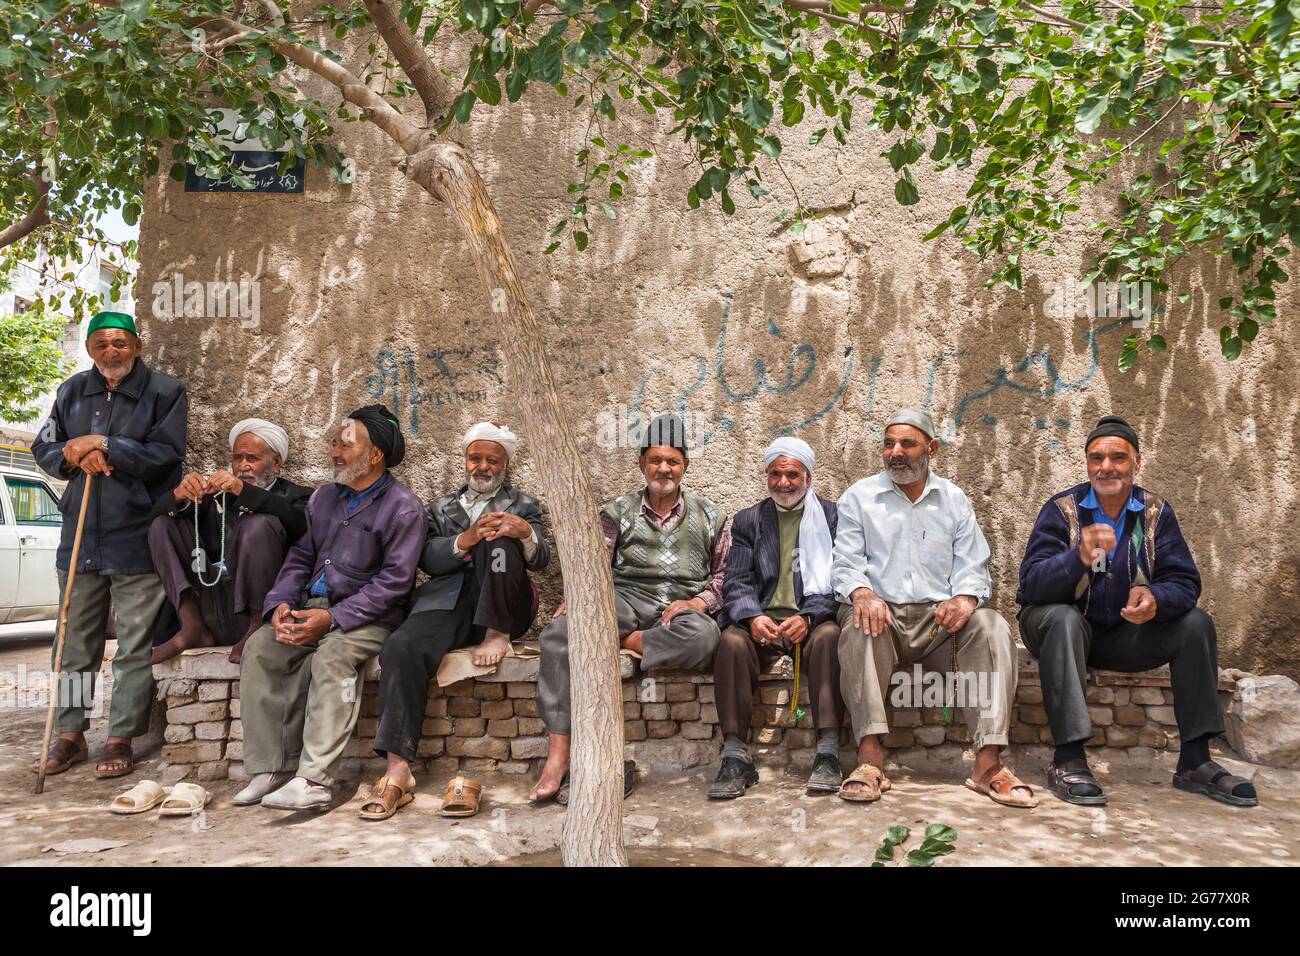 Vecchi amici che siedono e riposano sotto l'ombra dell'albero, Tus(Tous), sobborgo di Mashhad, Provincia di Razavi Khorasan, Iran, Persia, Asia occidentale, Asia Foto Stock